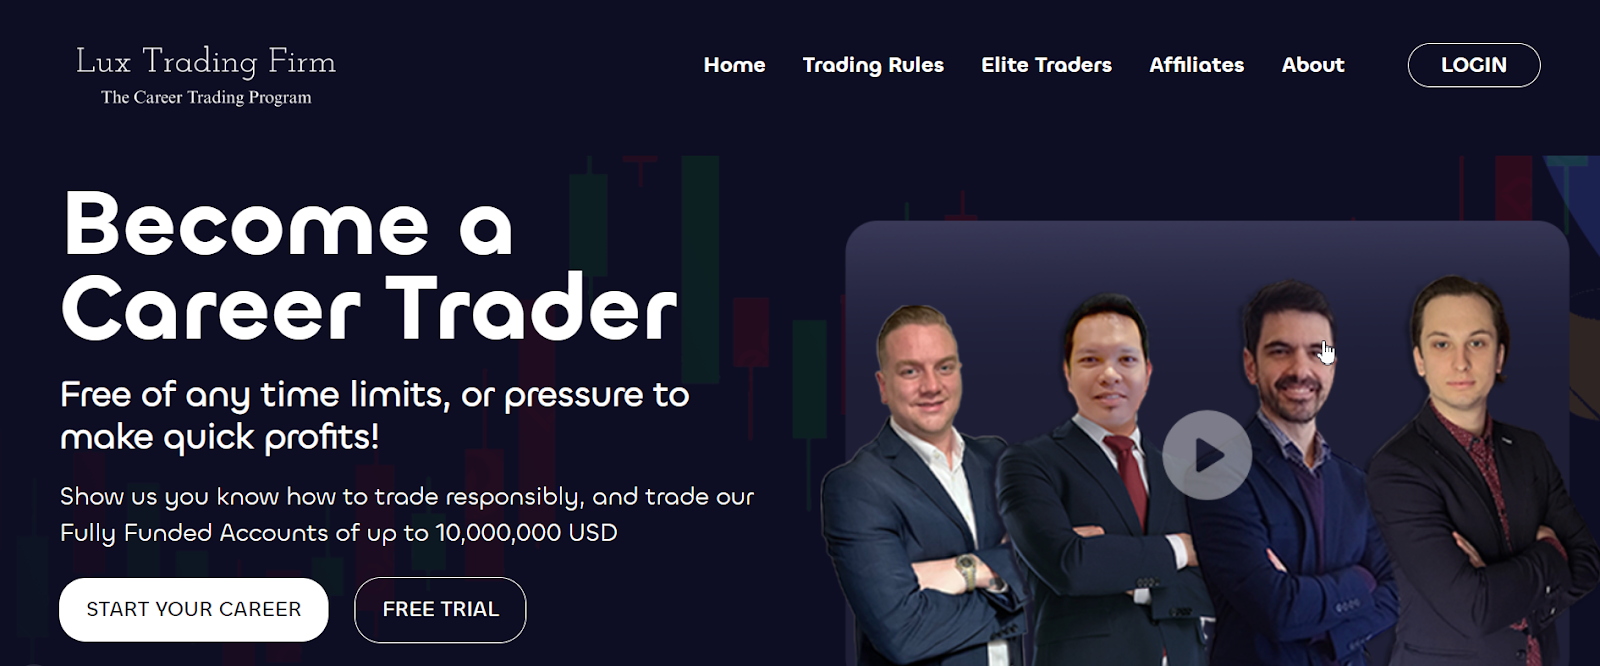 Revue de Lux Trading Firm - Essai gratuit